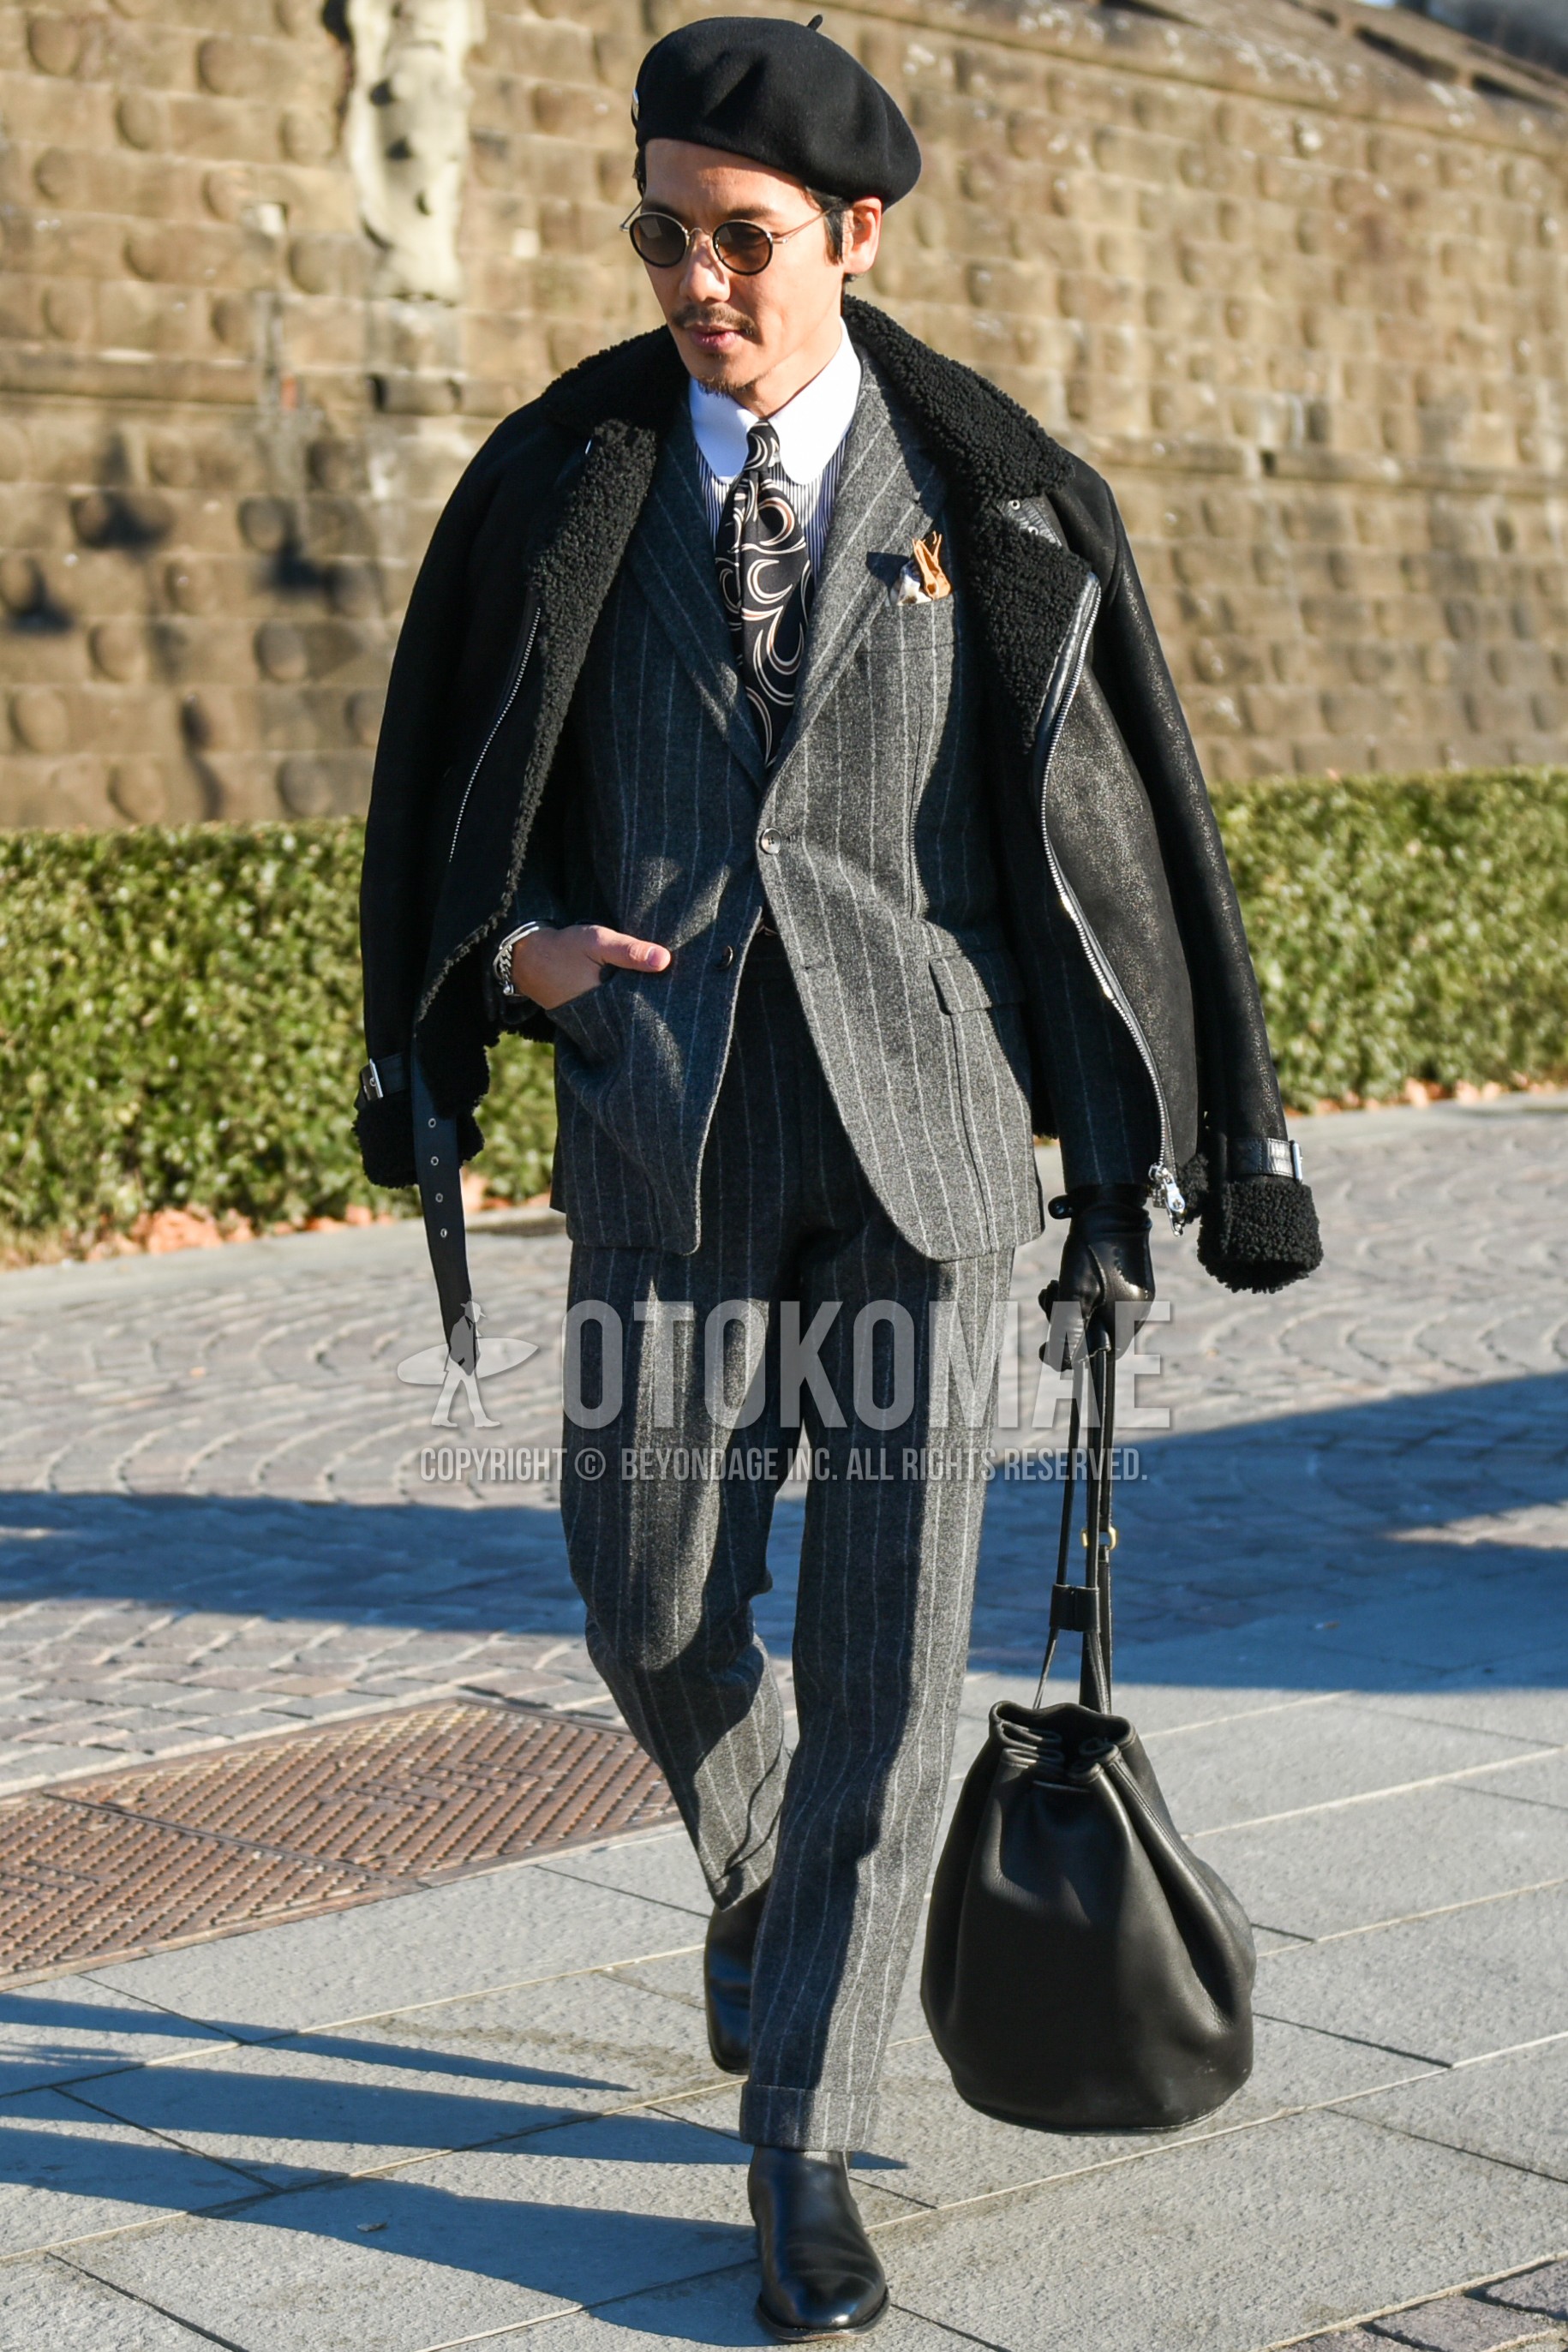 Men's autumn winter outfit with black plain leather jacket, white plain shirt, black  boots, black plain briefcase/handbag, gray stripes suit, black necktie necktie.